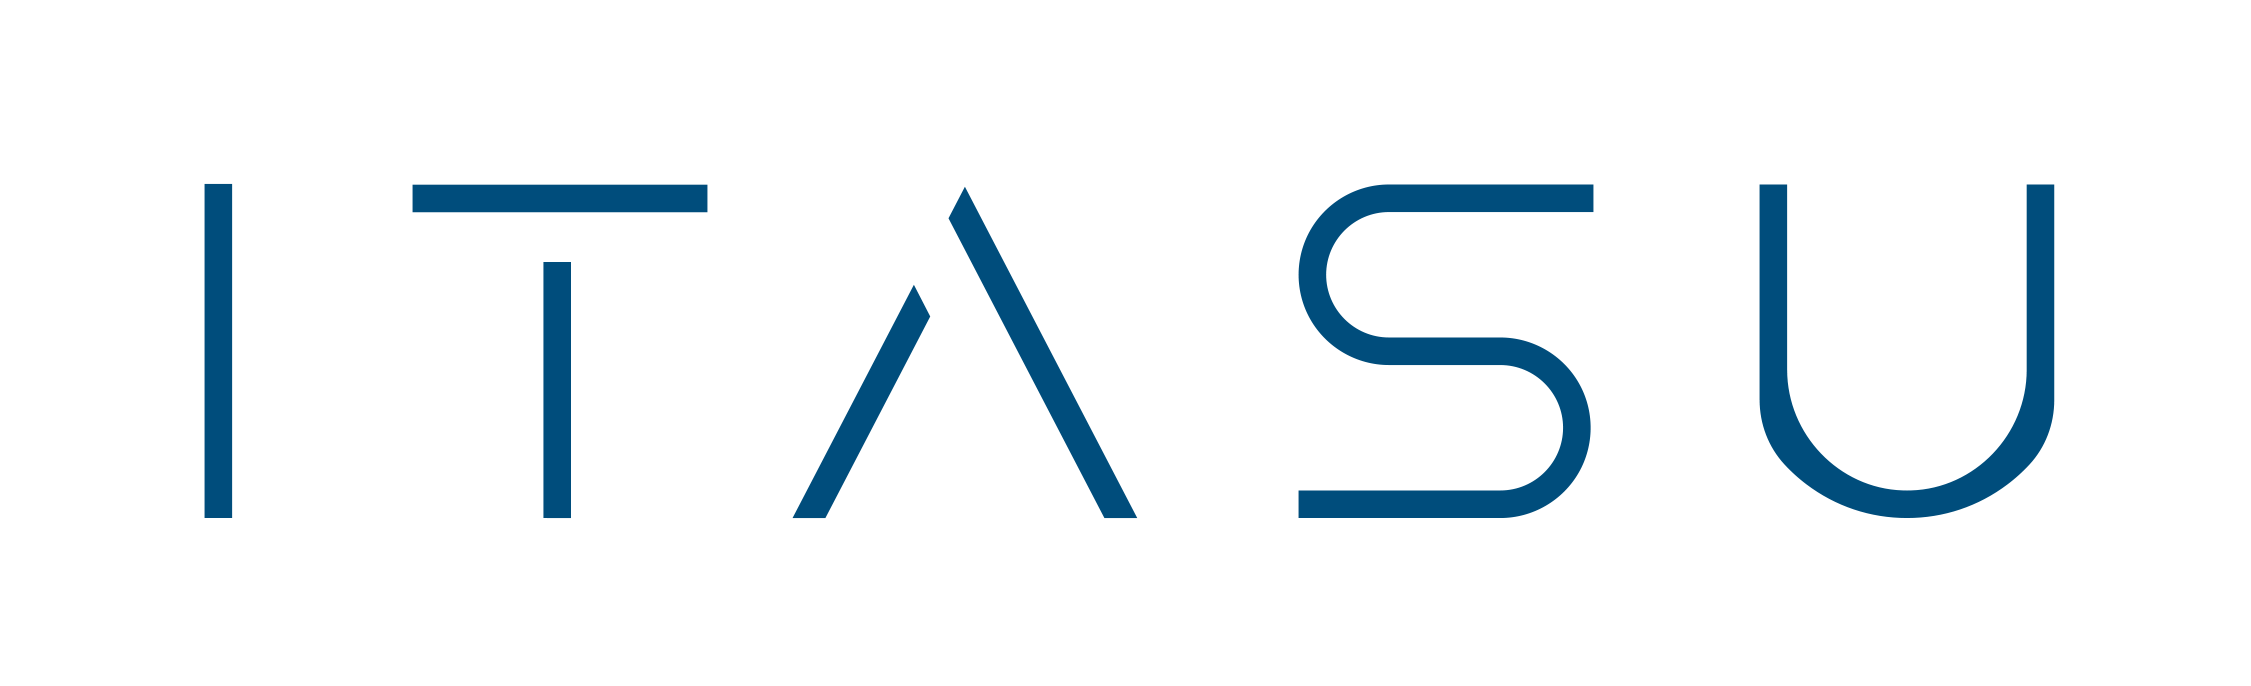 Itasu logo